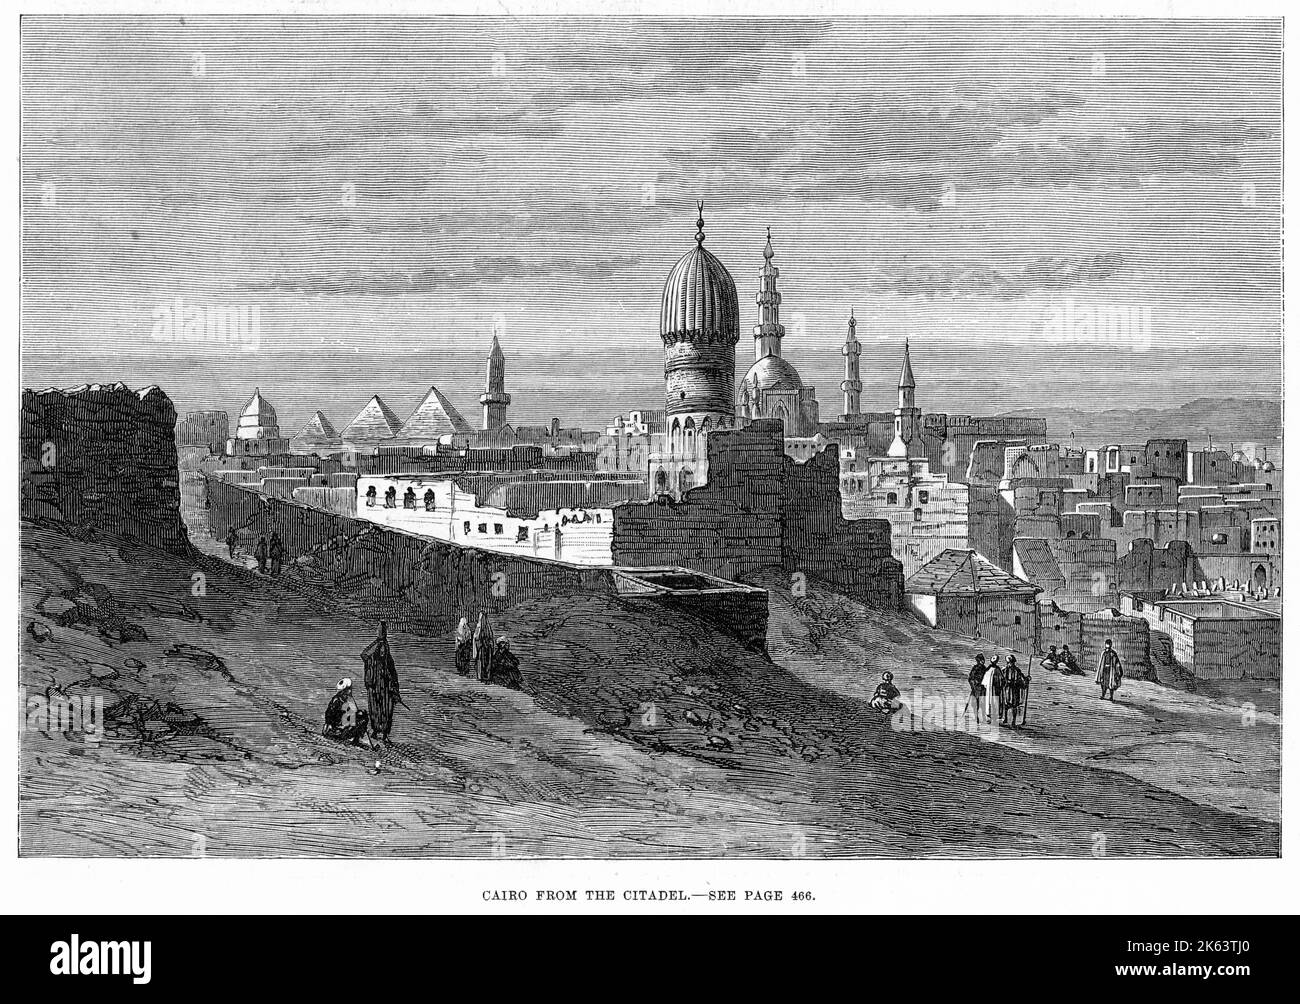 Kairo von der Zitadelle aus gesehen. Stockfoto